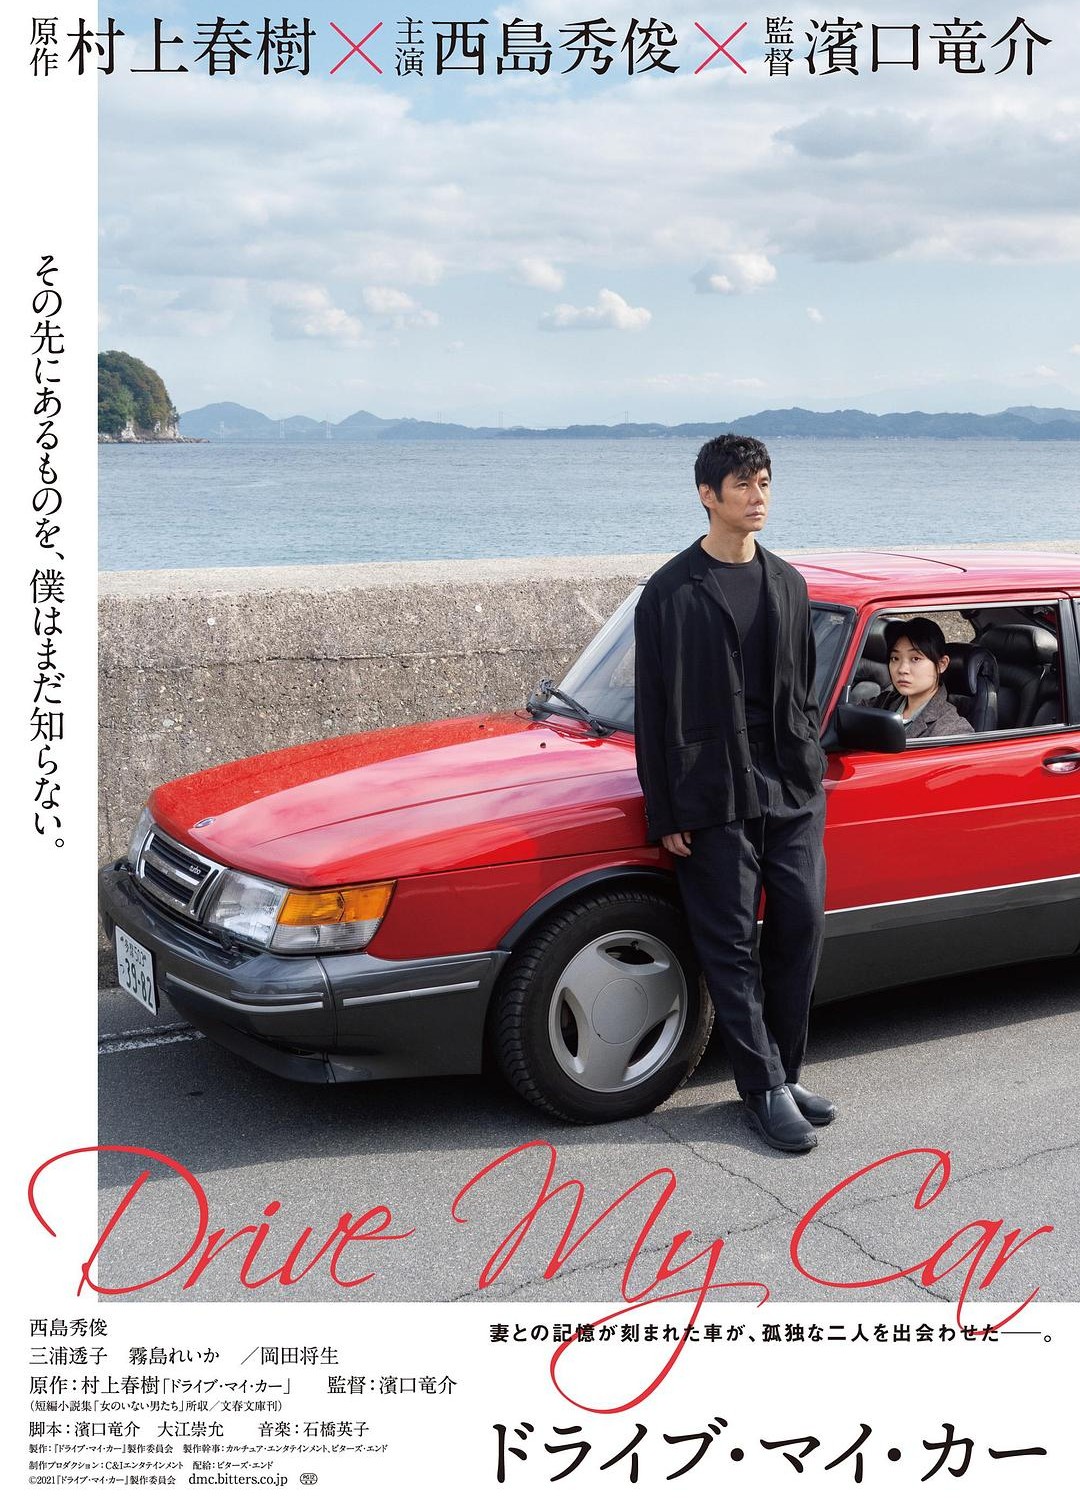 [在车上(台) / Drive My Car/驾驶我的车 ドライブ・マイ・カー][2021][日本][剧情][日语 / 英语 / 韩国手语 / 德语 / 汉语普通话 / 他加禄语 / 韩语 / 印度尼西亚语]